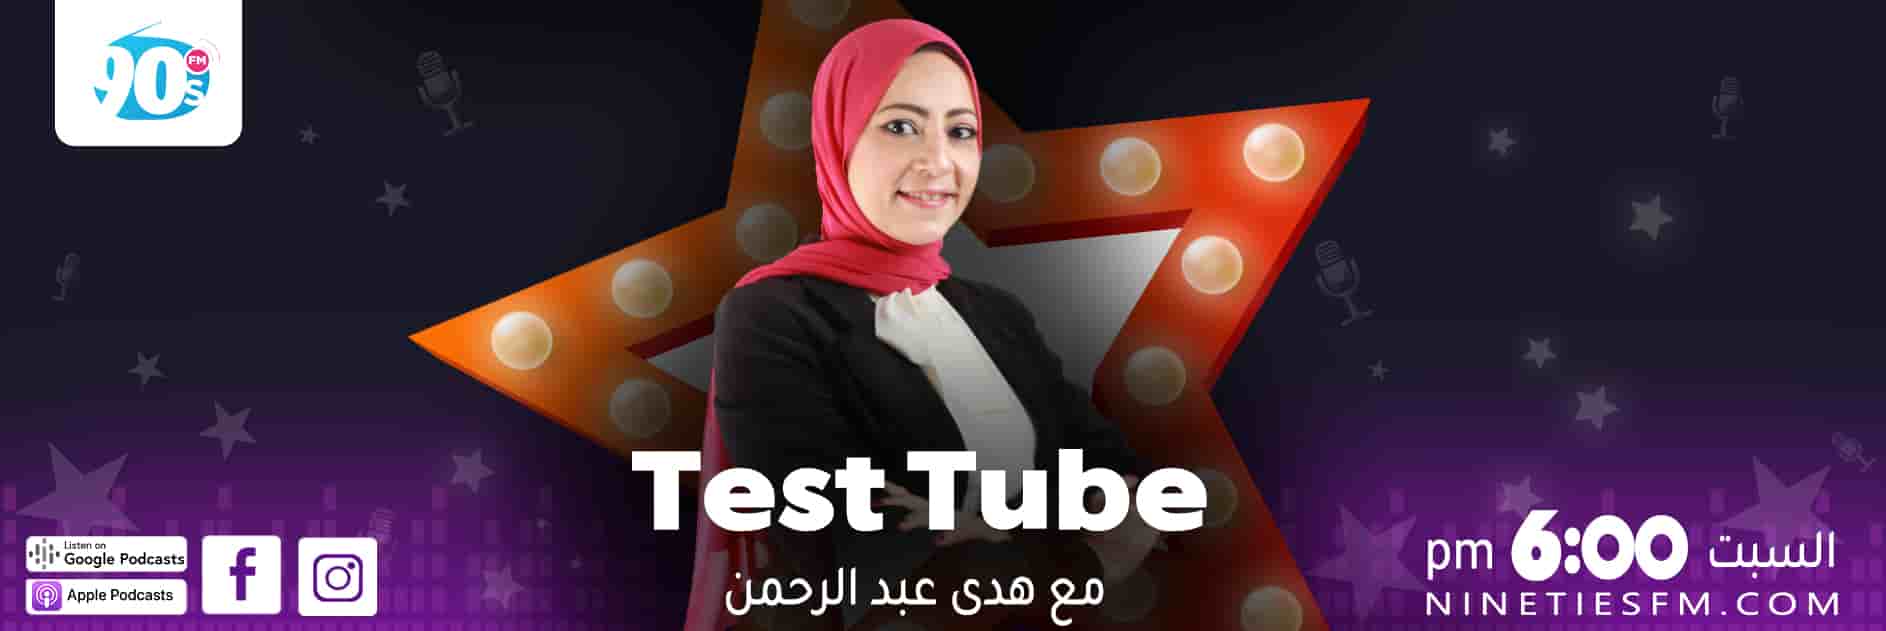 Test Tube - هدى عد الرحمن